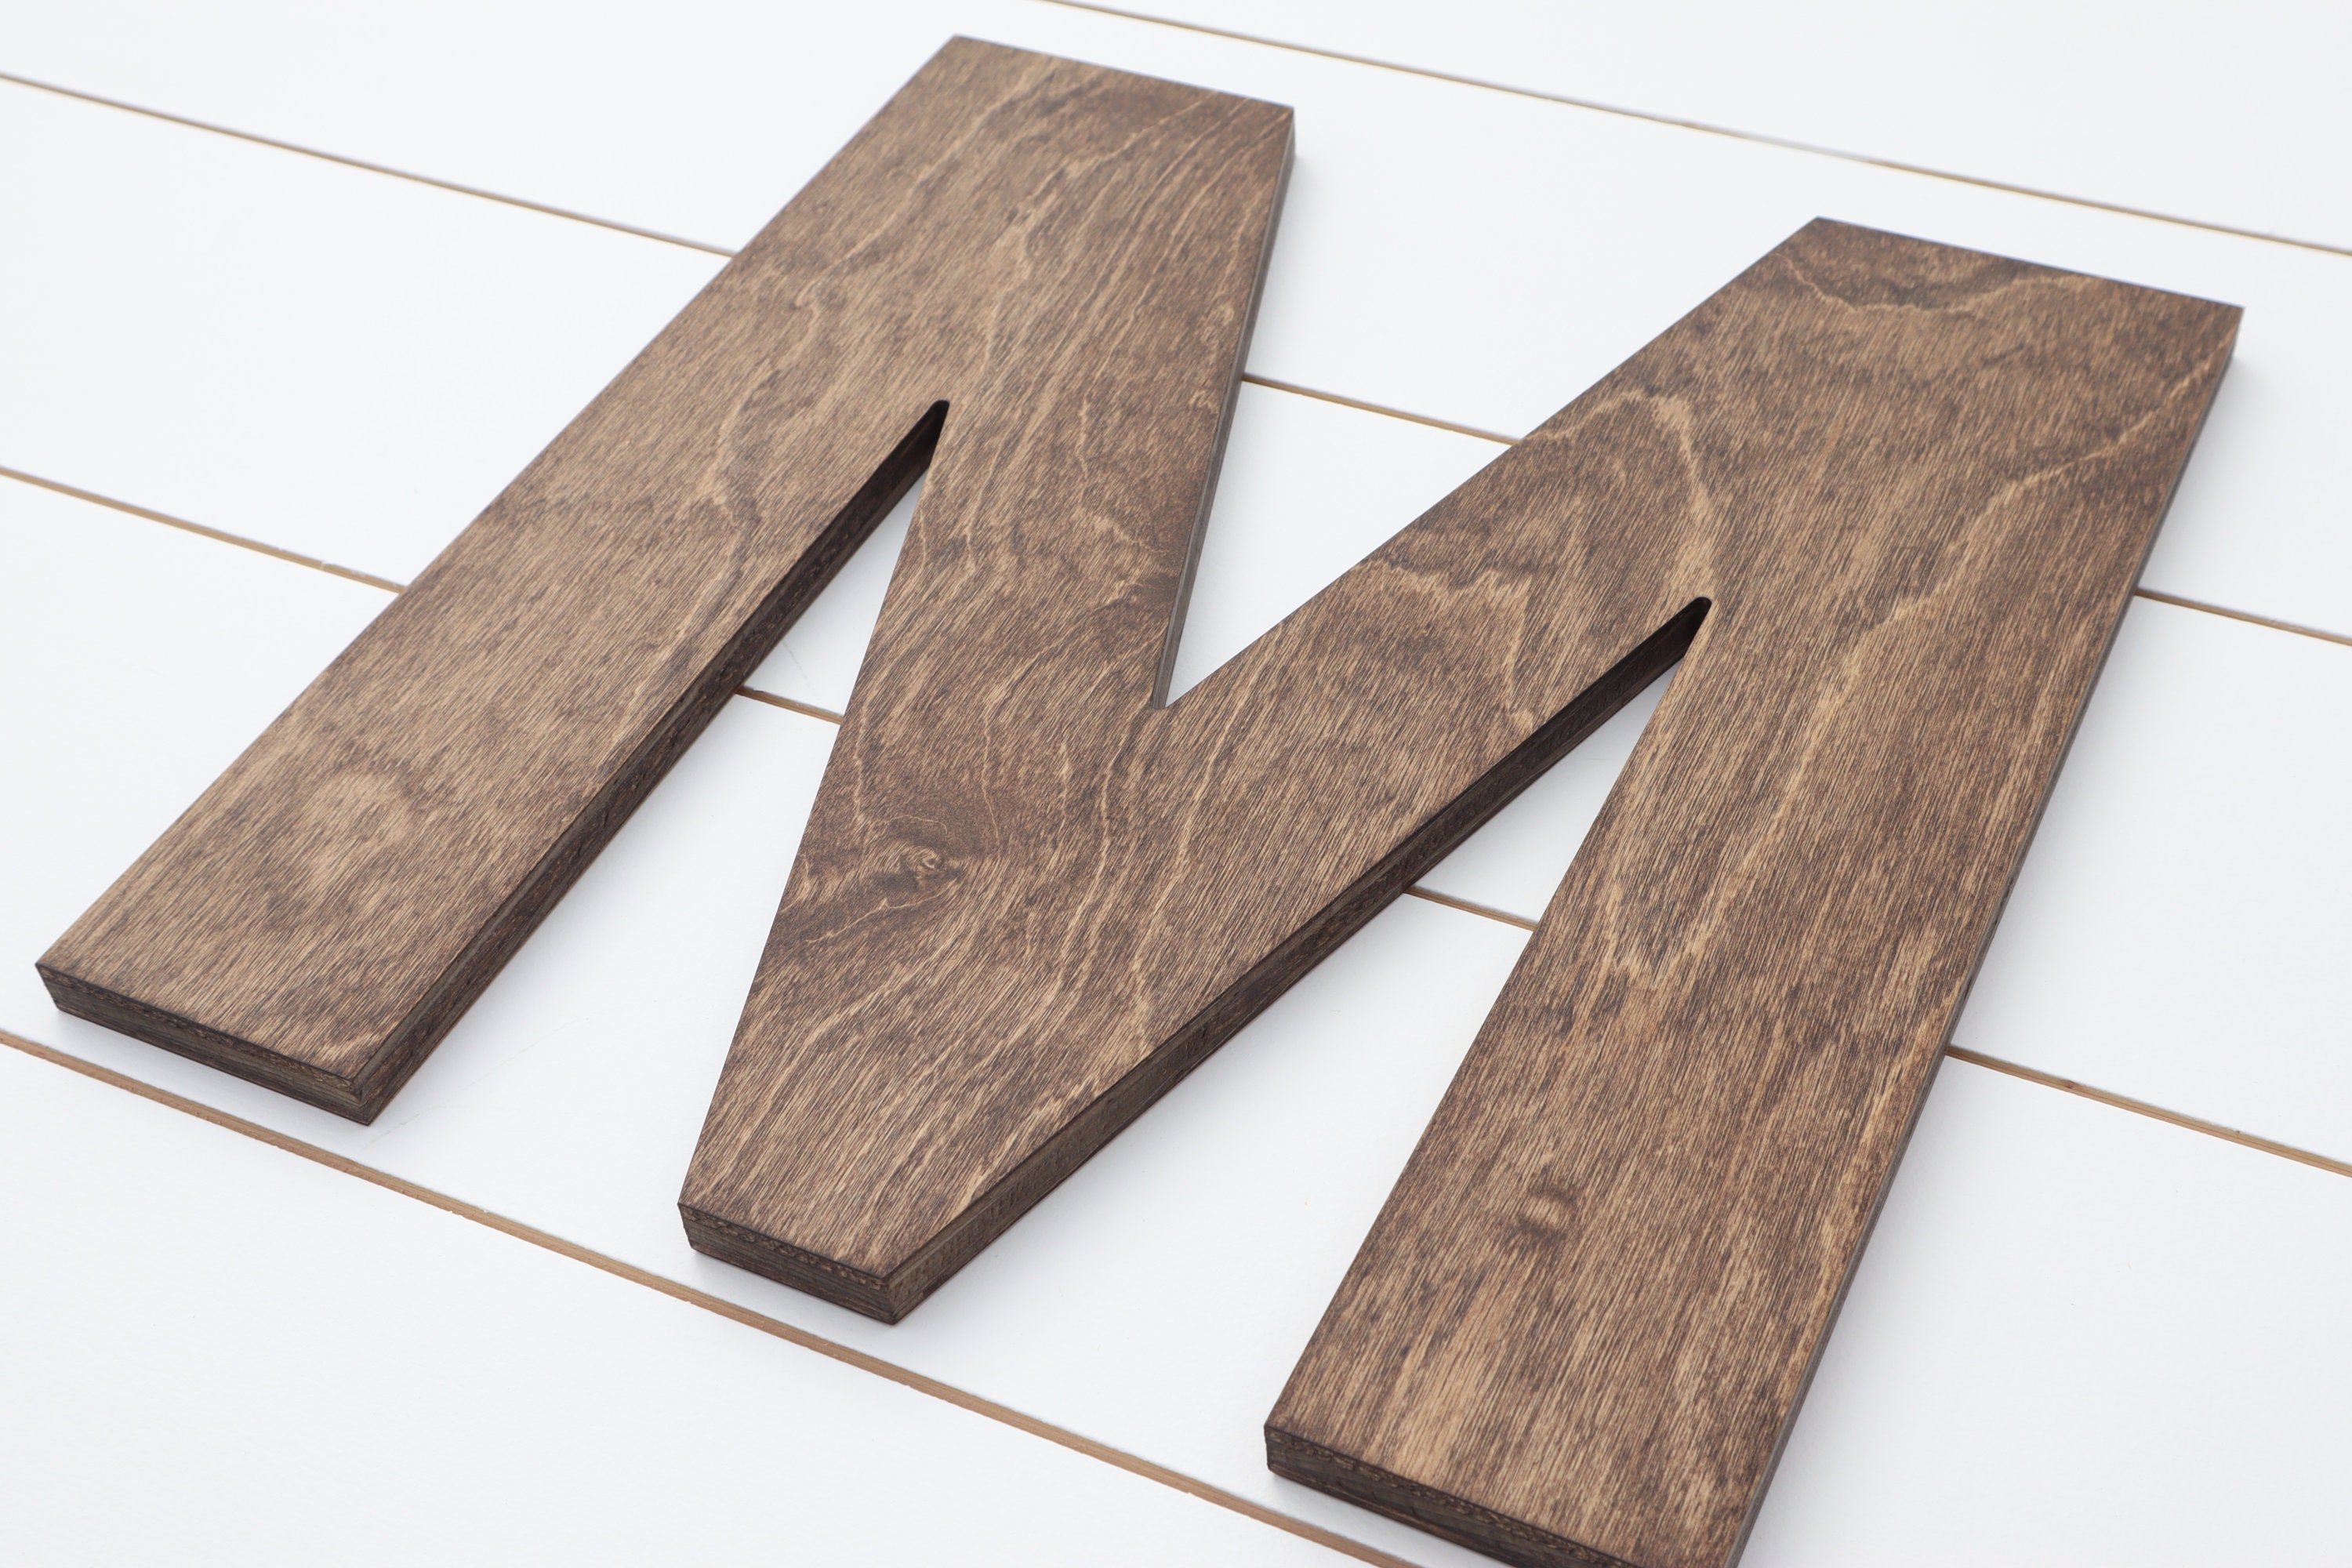 Pressed Board Beveled Wooden Letter I, Natural, 6-inch 